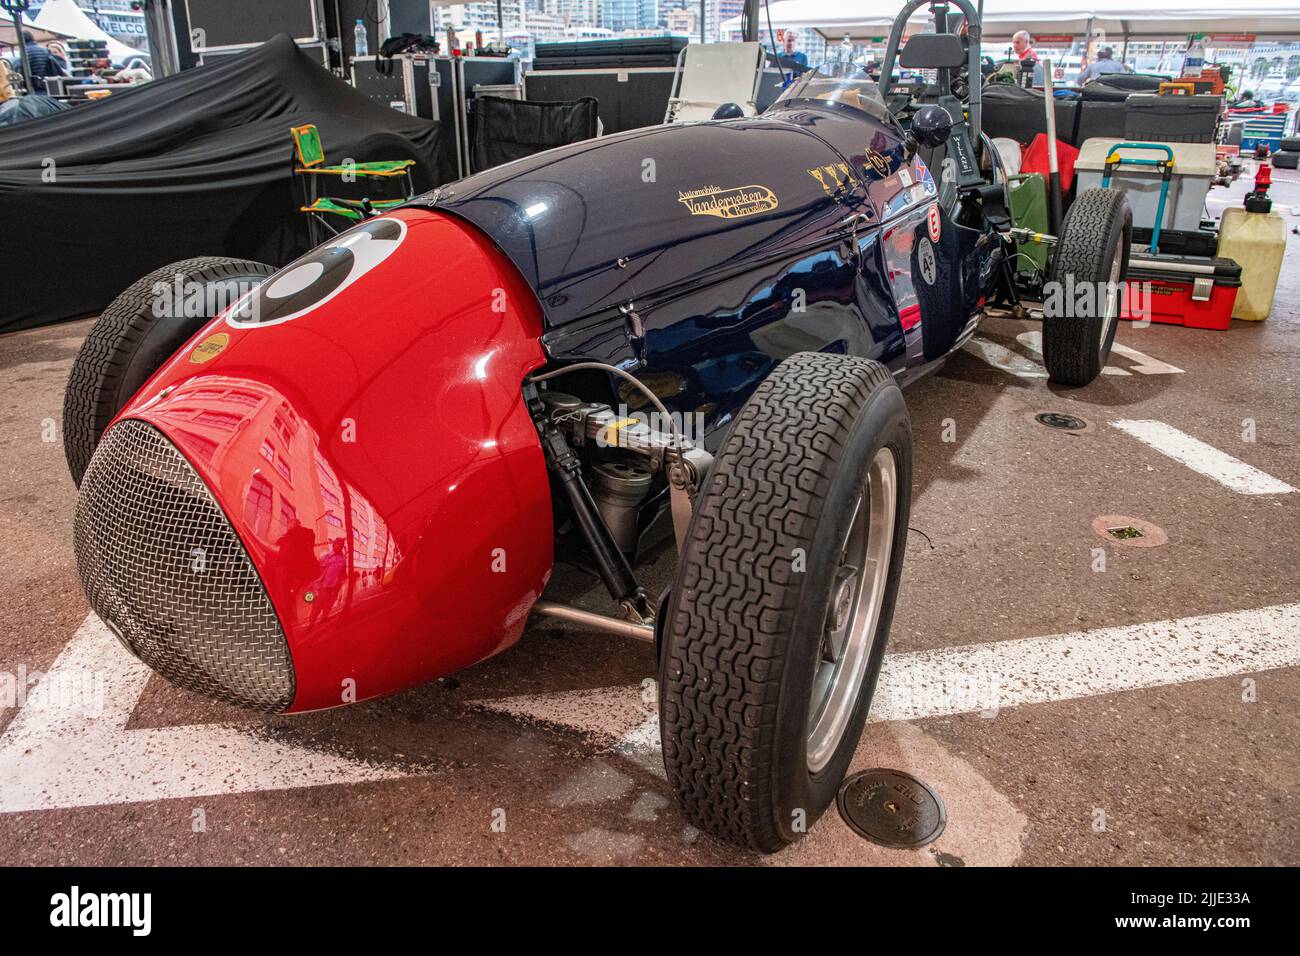 A Cooper Bristol T23 MKII single seater car in the pits of the historic Grand Prix in Monaco Stock Photo